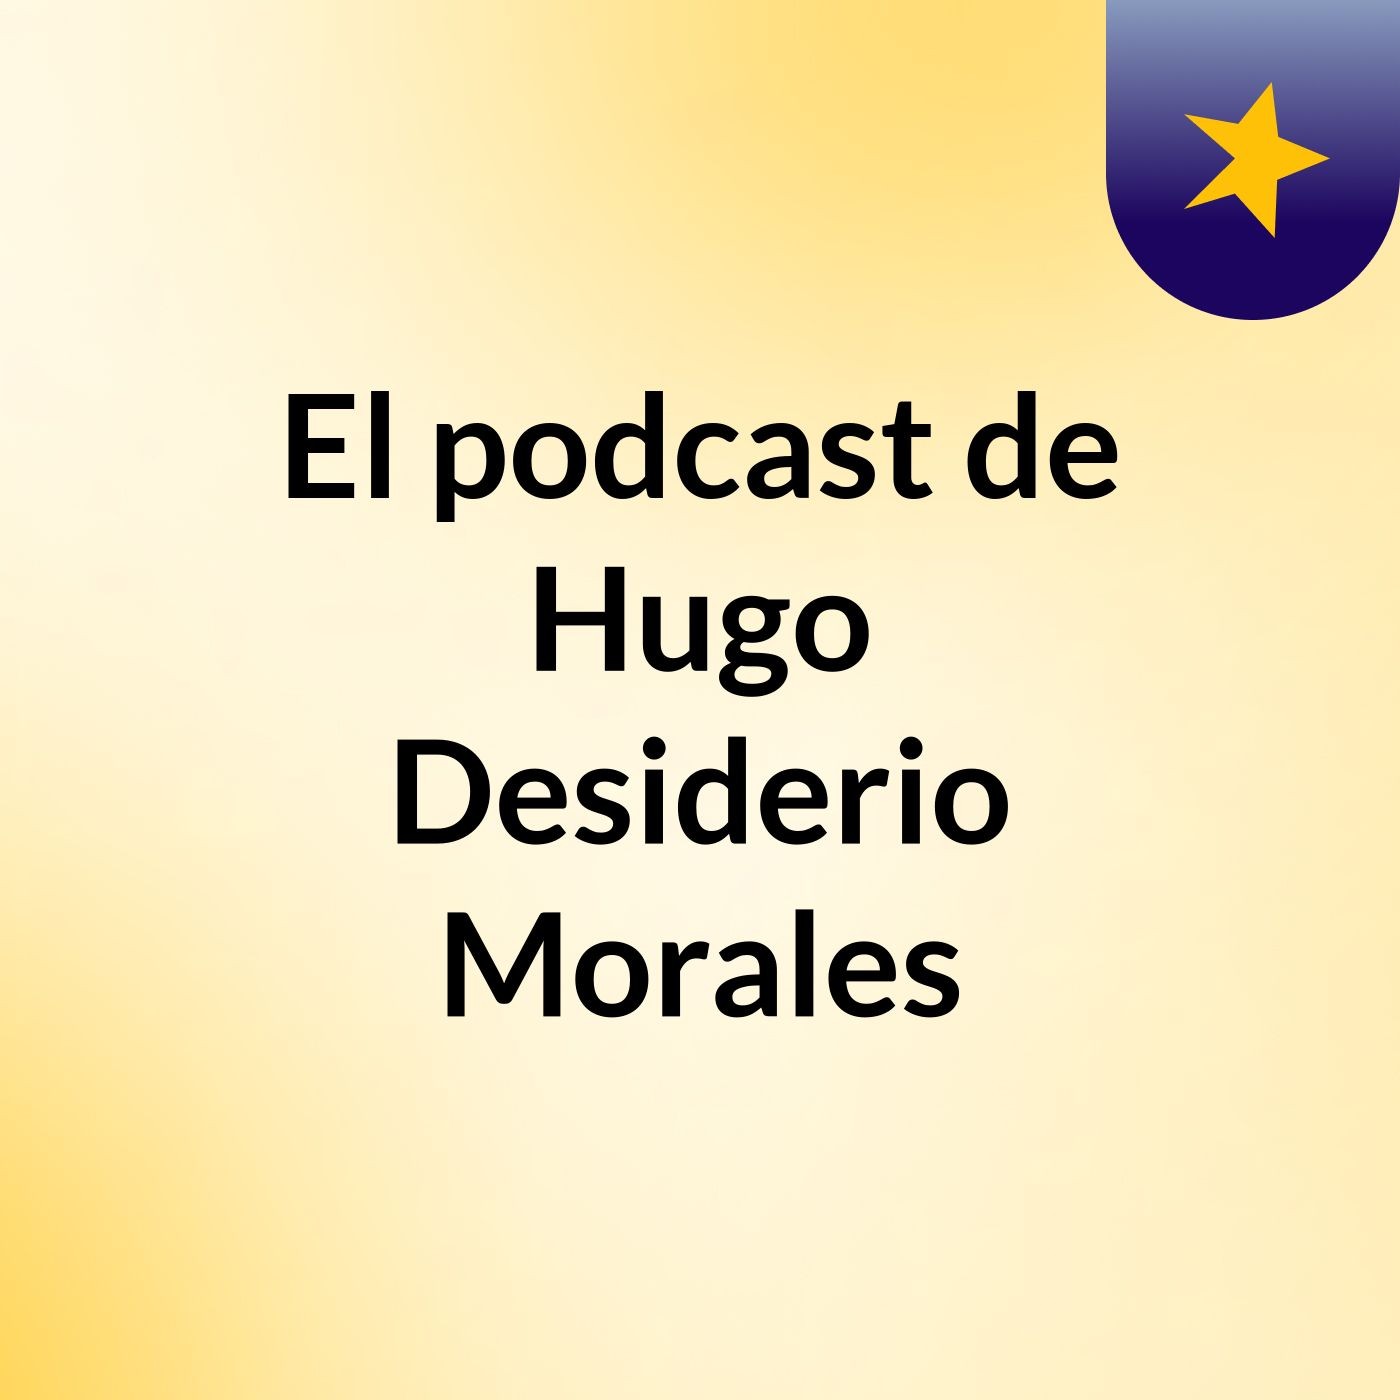 El podcast de Hugo Desiderio Morales